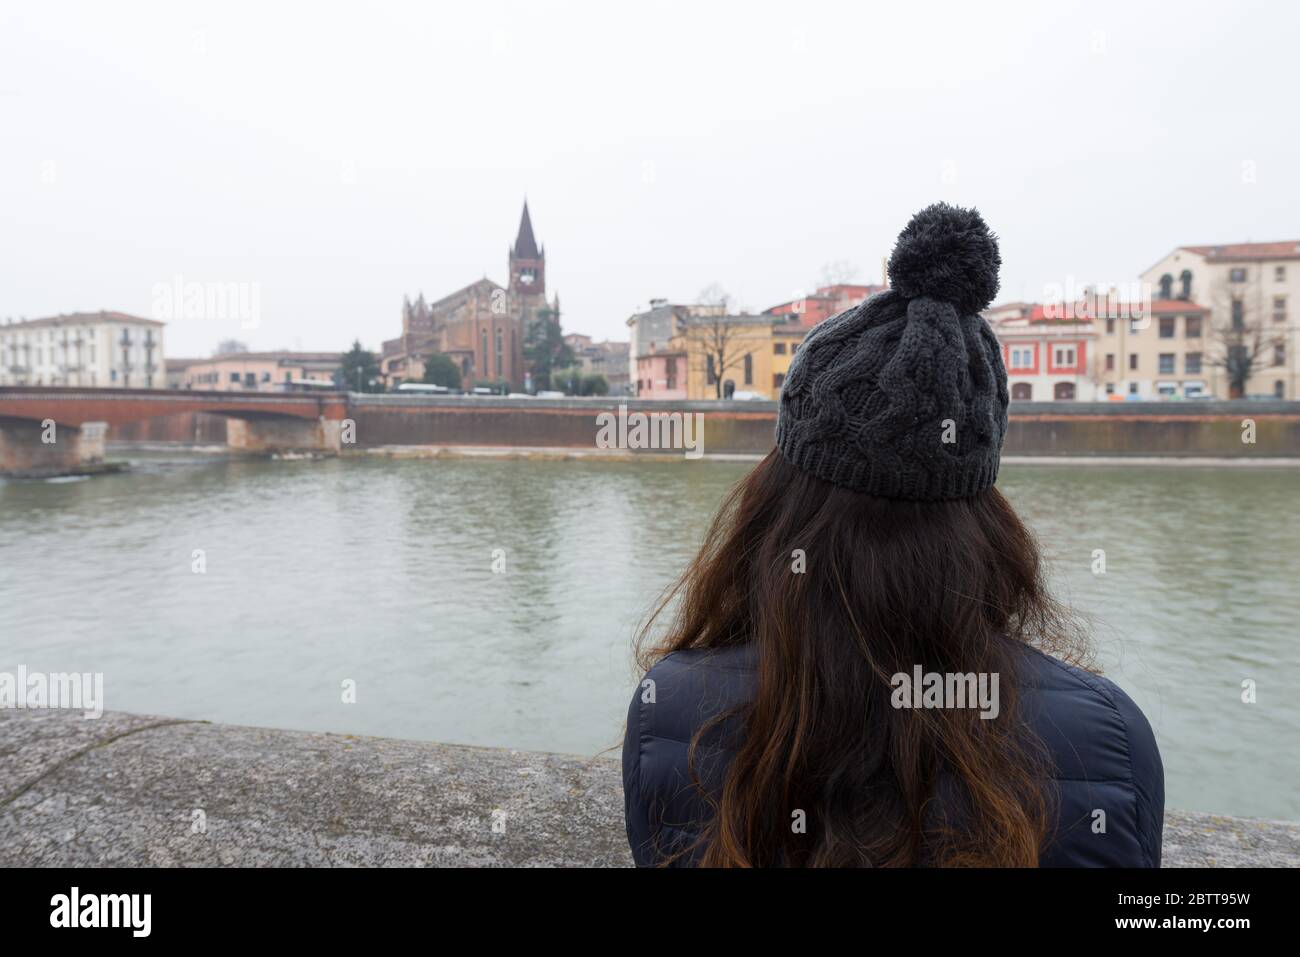 Immagine orizzontale della donna delle bruna che guarda al fiume Adige durante la fredda giornata a Verona Foto Stock